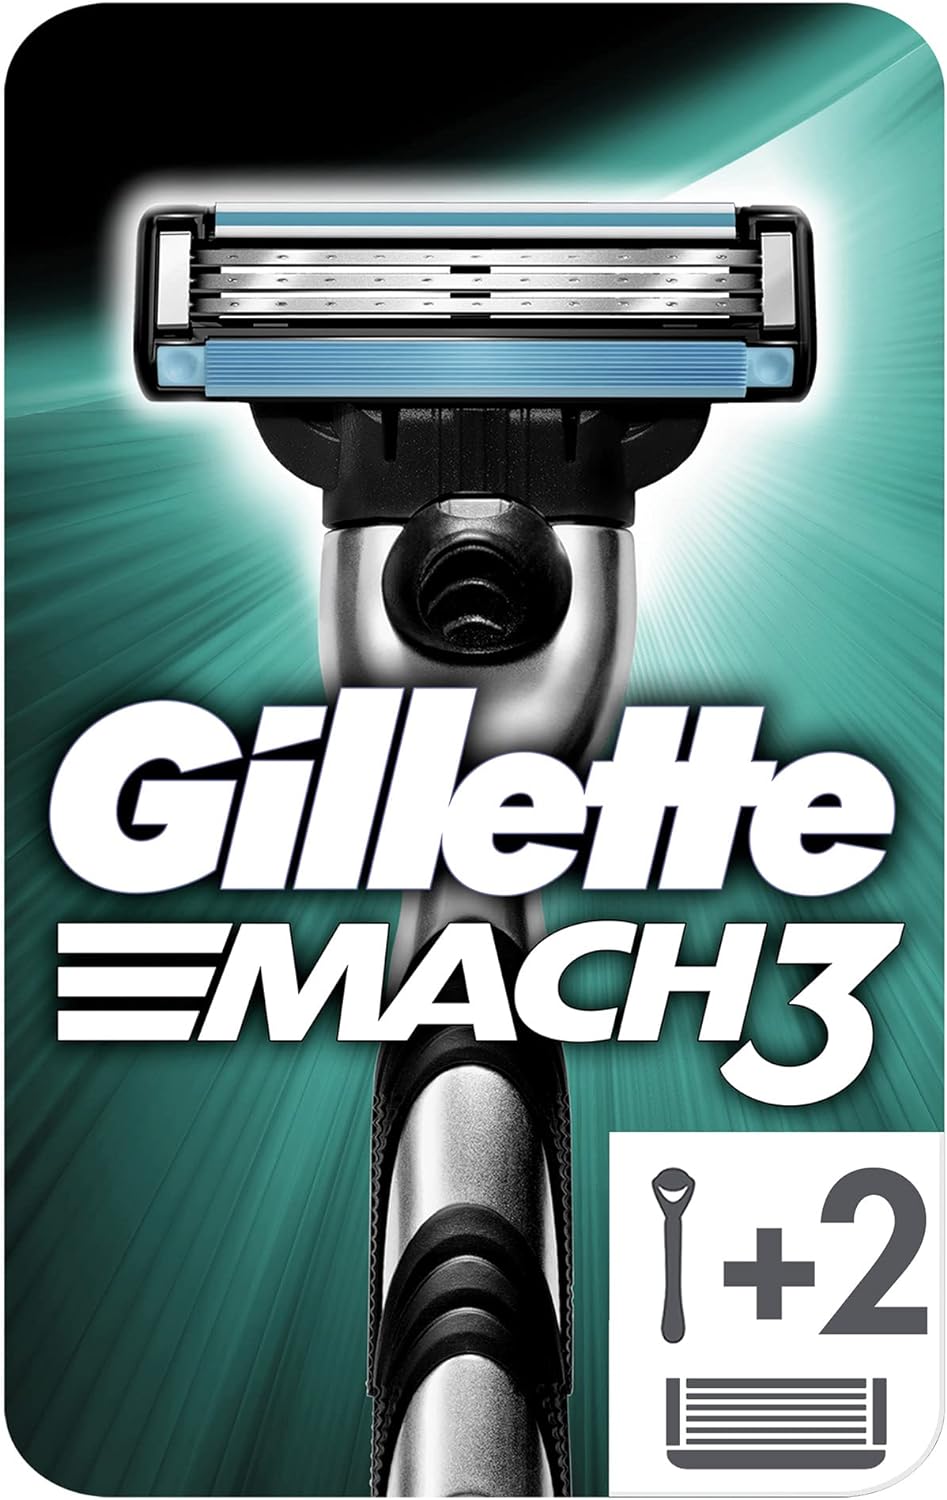 GILLETE MACH 3 ماكينة + 2 موس